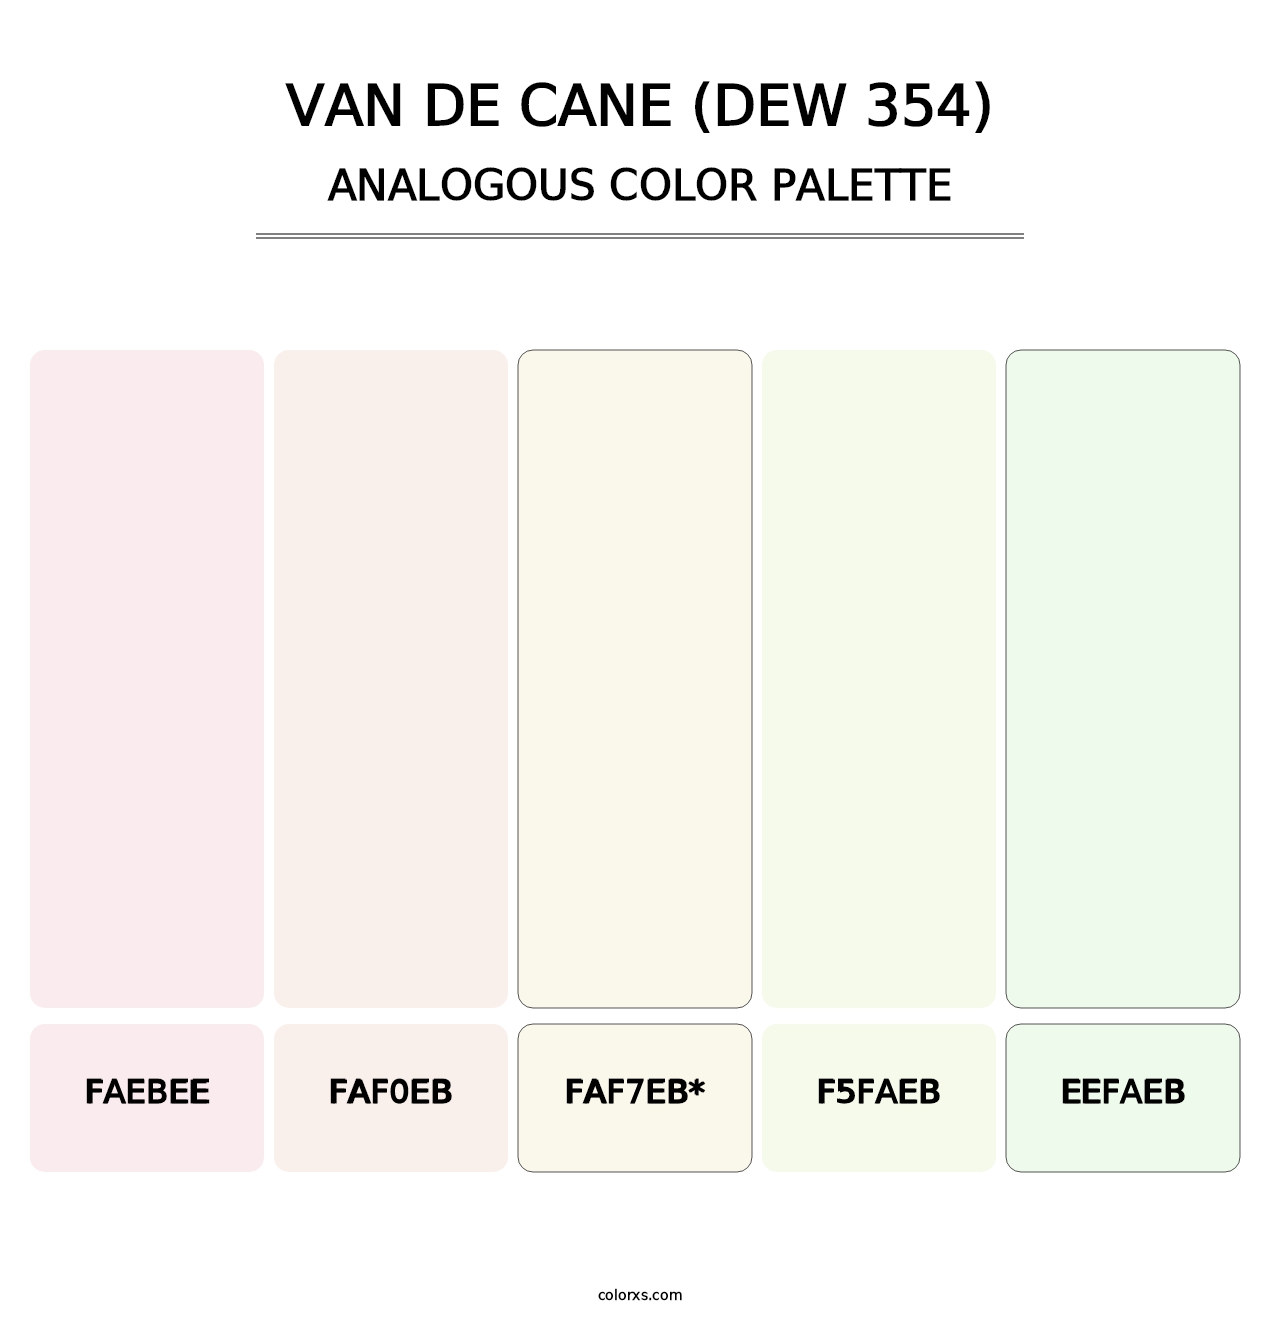 Van de Cane (DEW 354) - Analogous Color Palette